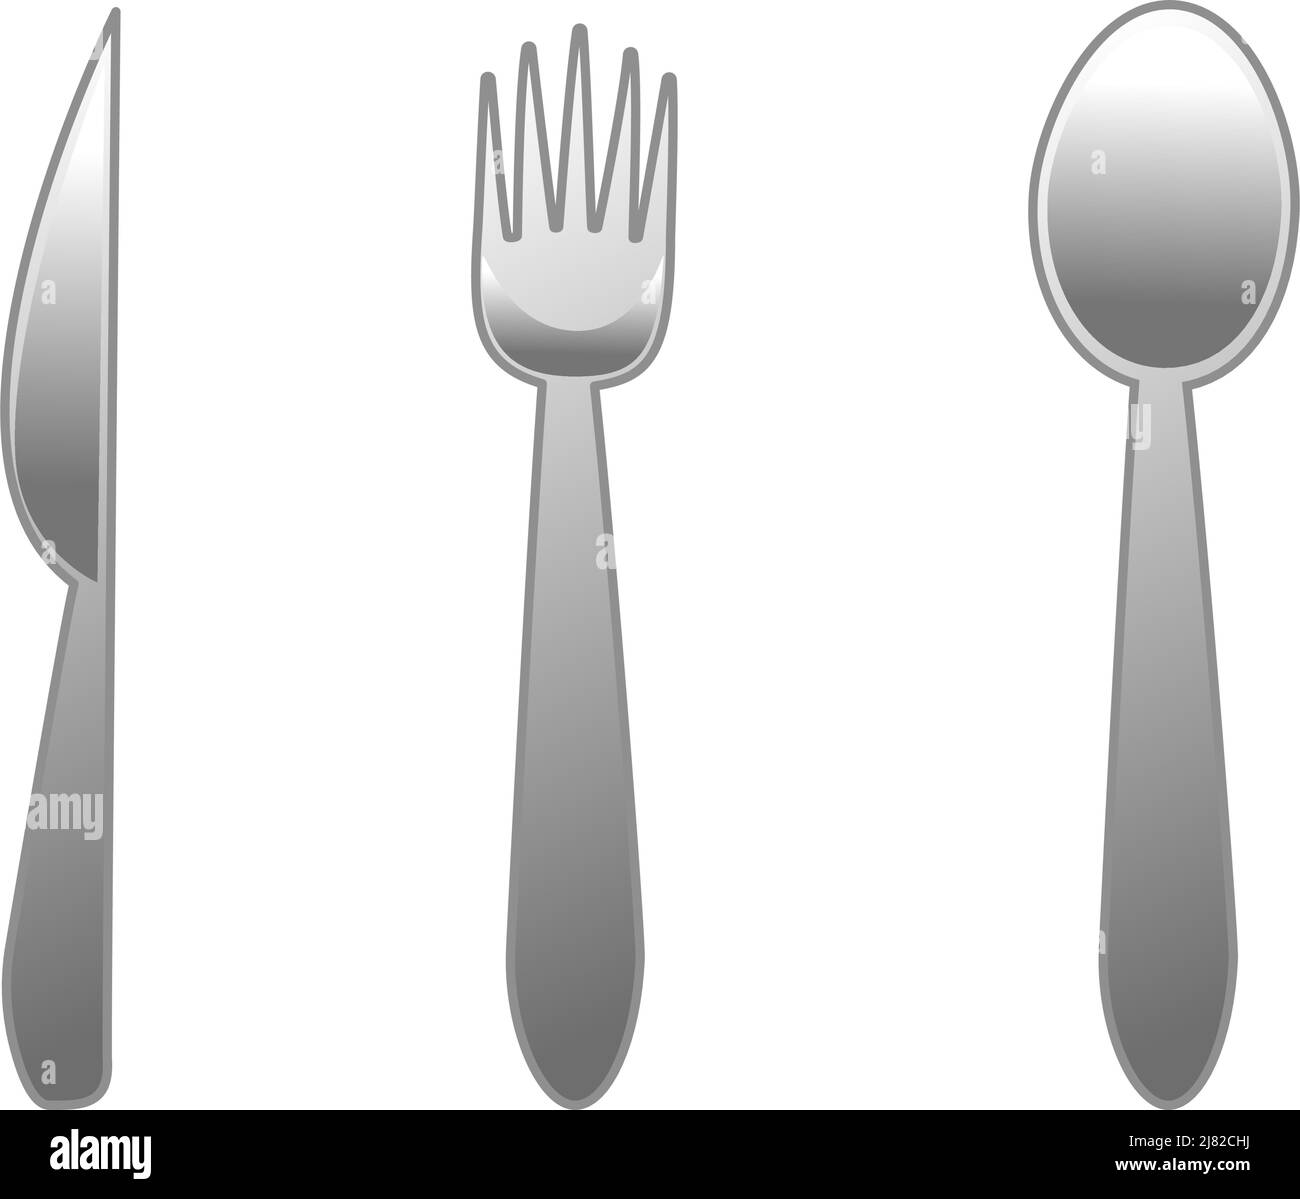 Un set di un coltello, forchetta e cucchiaio con fondo bianco Foto Stock